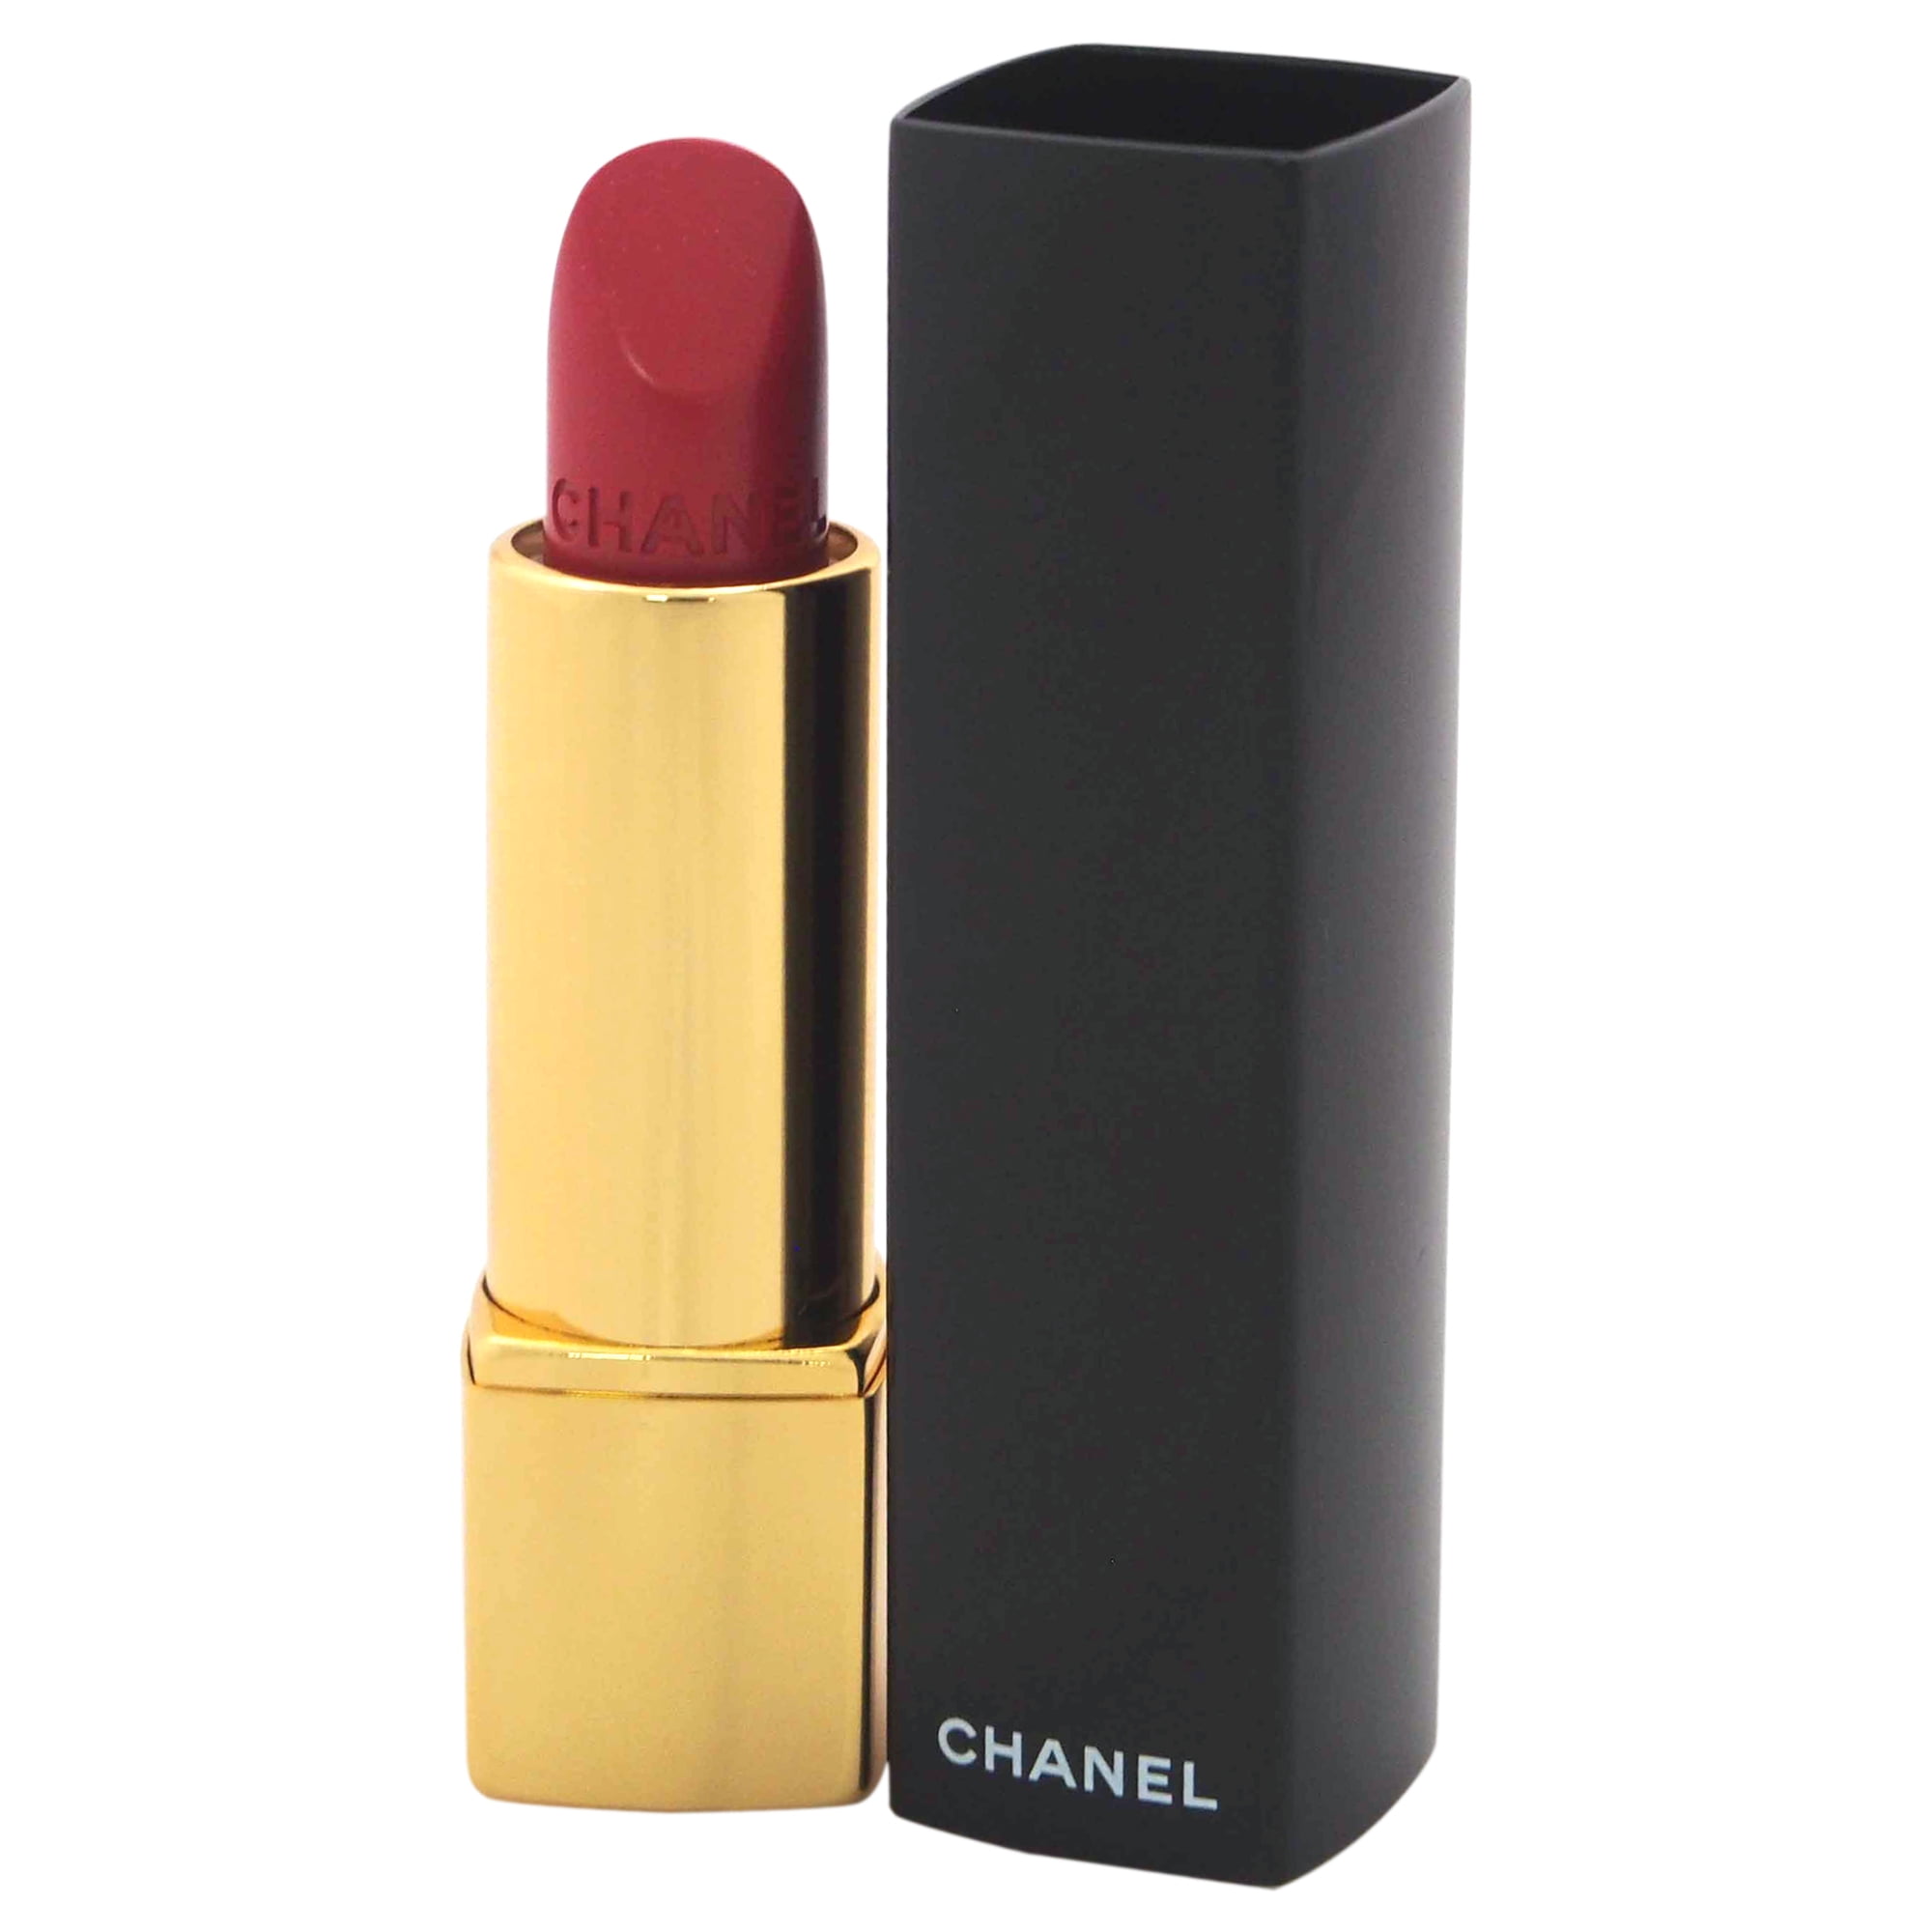 chanel 99 pirate lipstick